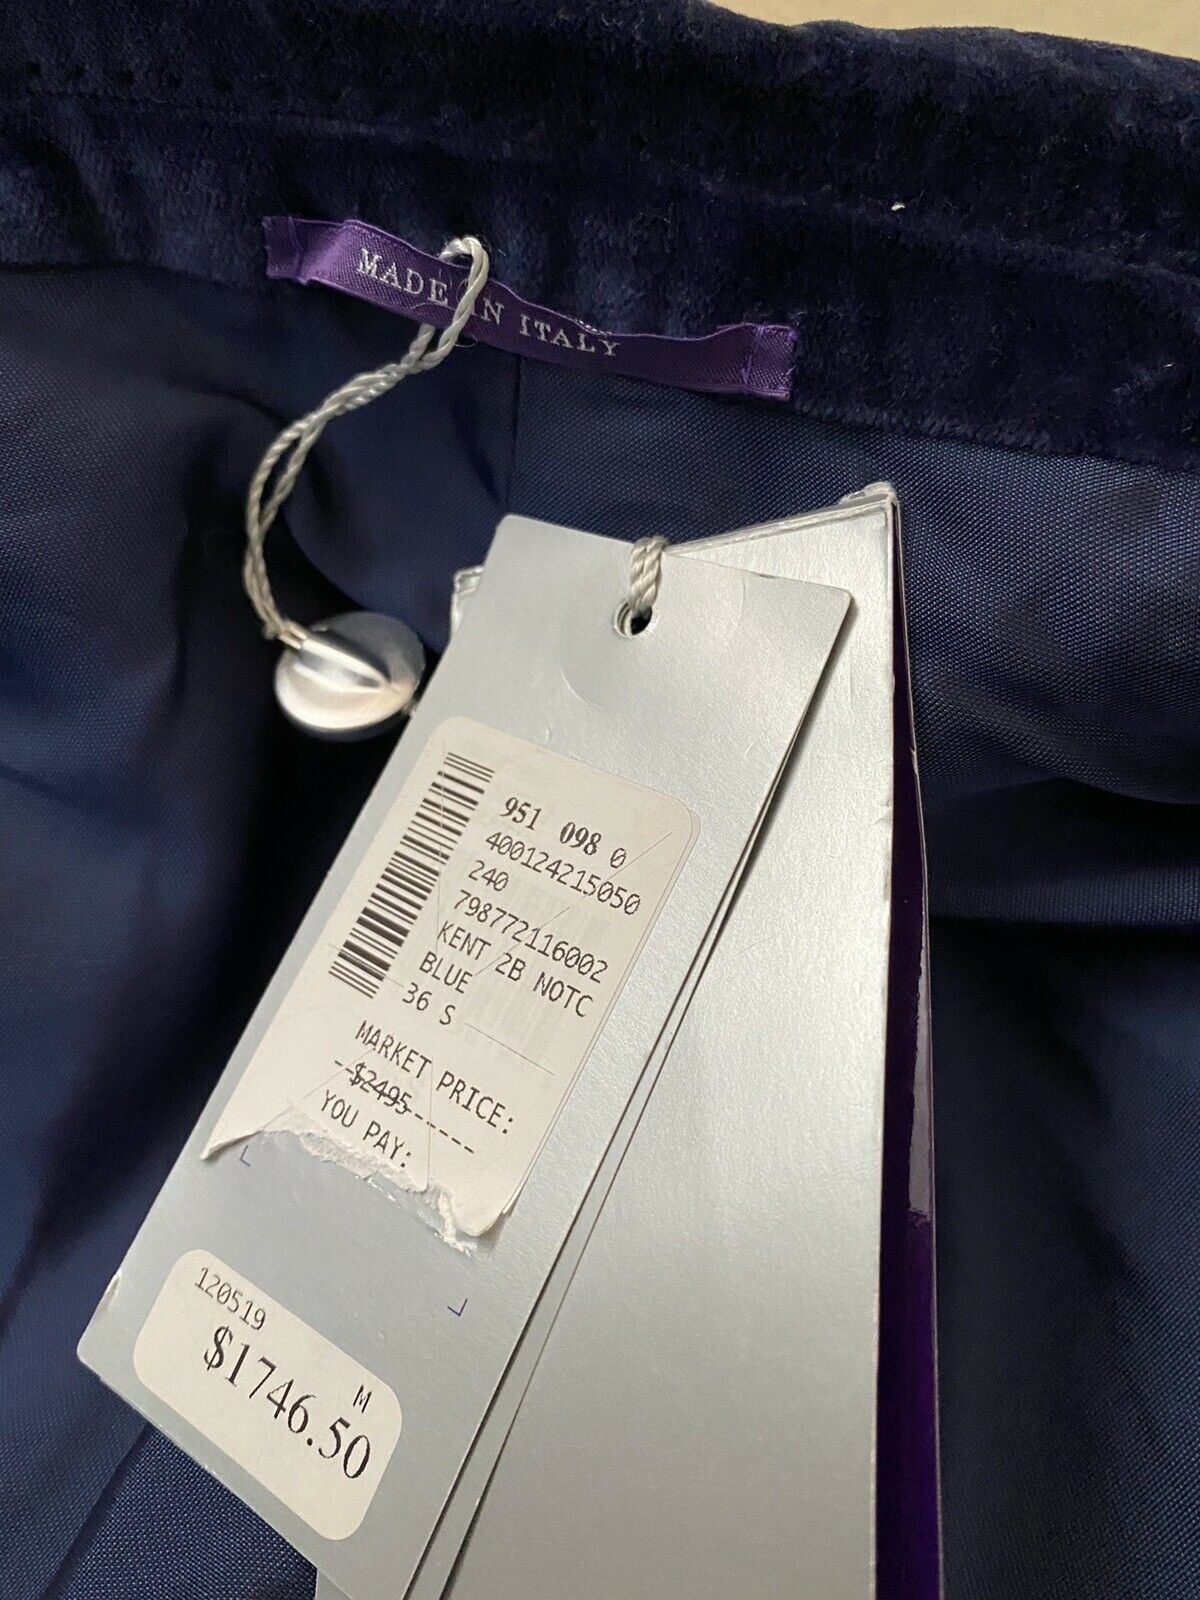 NWT $2495 Ralph Lauren Purple Label Мужской спортивный пиджак Синий 36S США/46S EU Ita